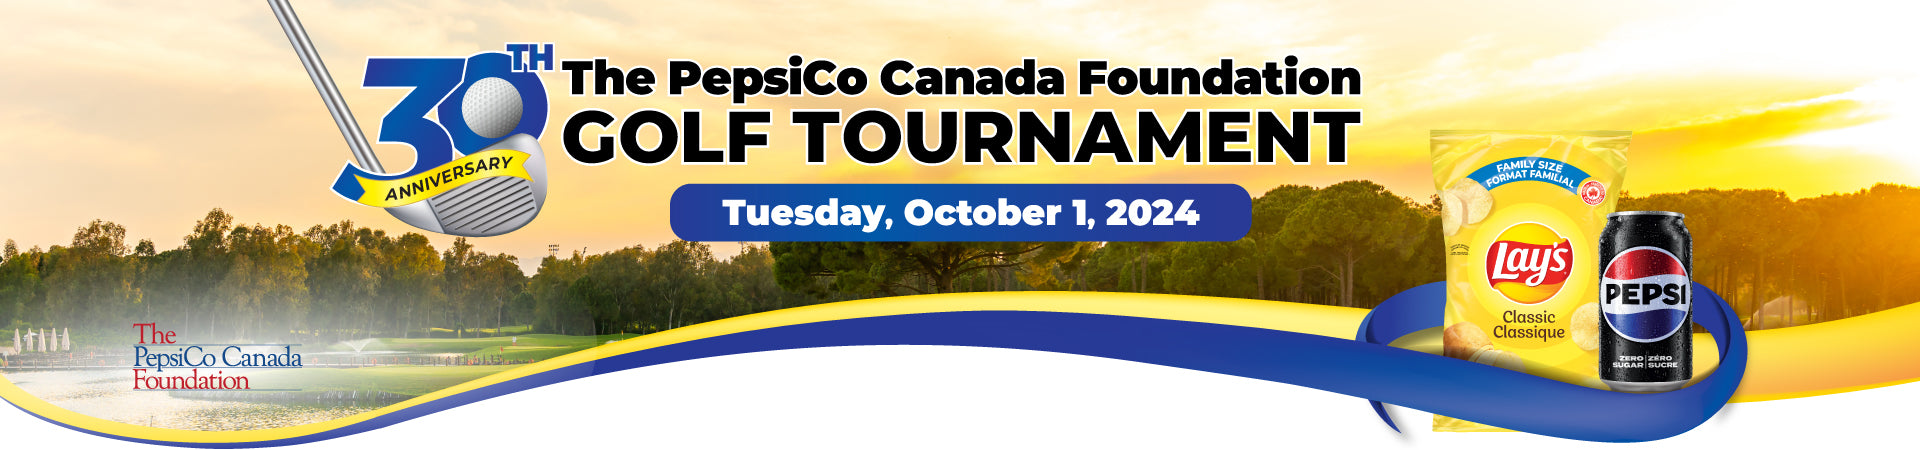 PepsiCo Canada Foundation Golf Tournament